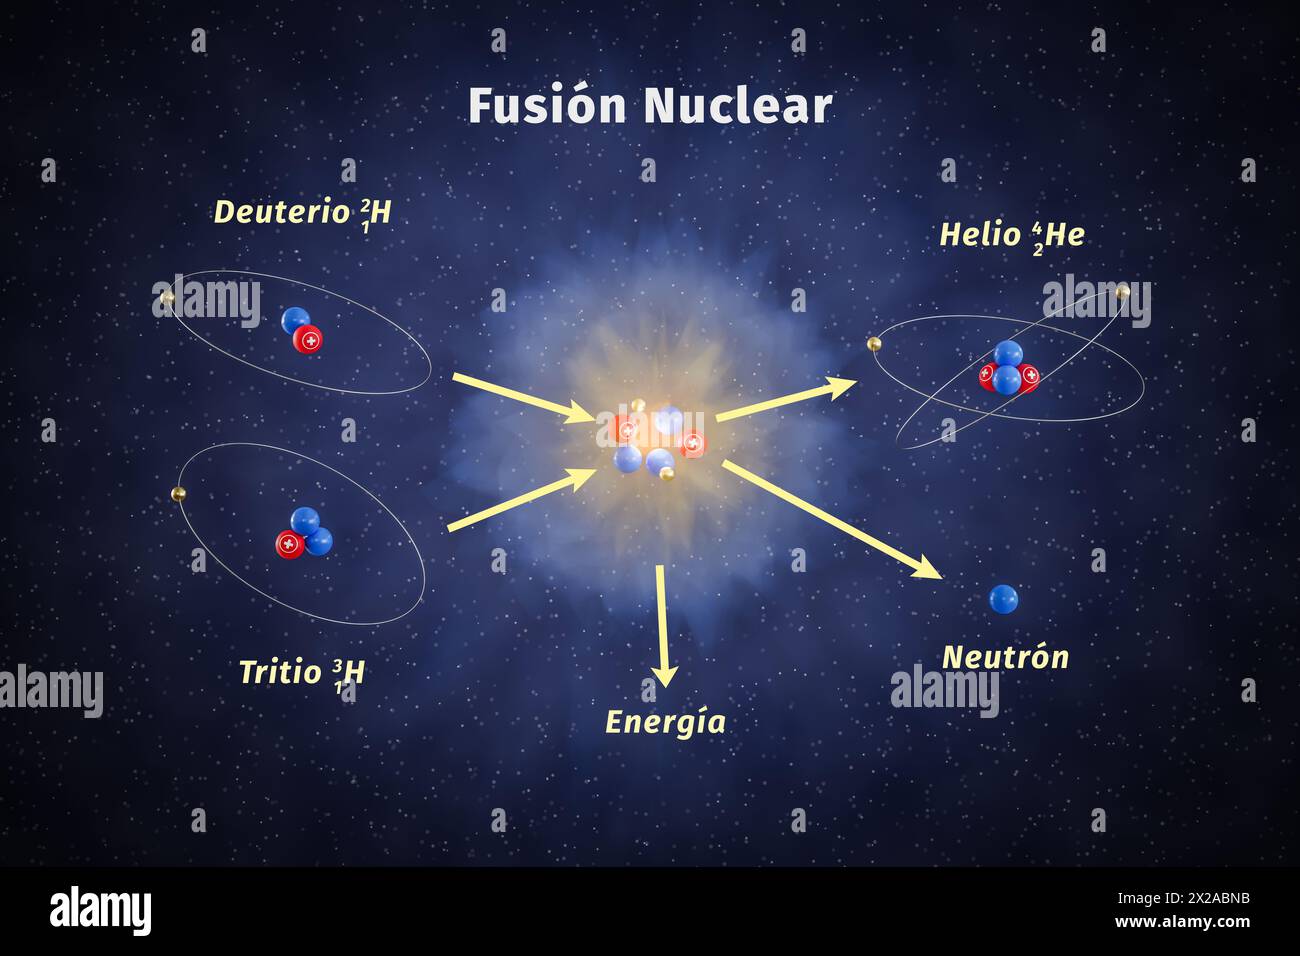 Schematische Darstellung der Kernfusion. Ein Deuterium- und ein Tritium-Isotop Wasserstoff werden zu einem Heliumatom, einem Neutron und einem Heliumatom verschmolzen Stockfoto